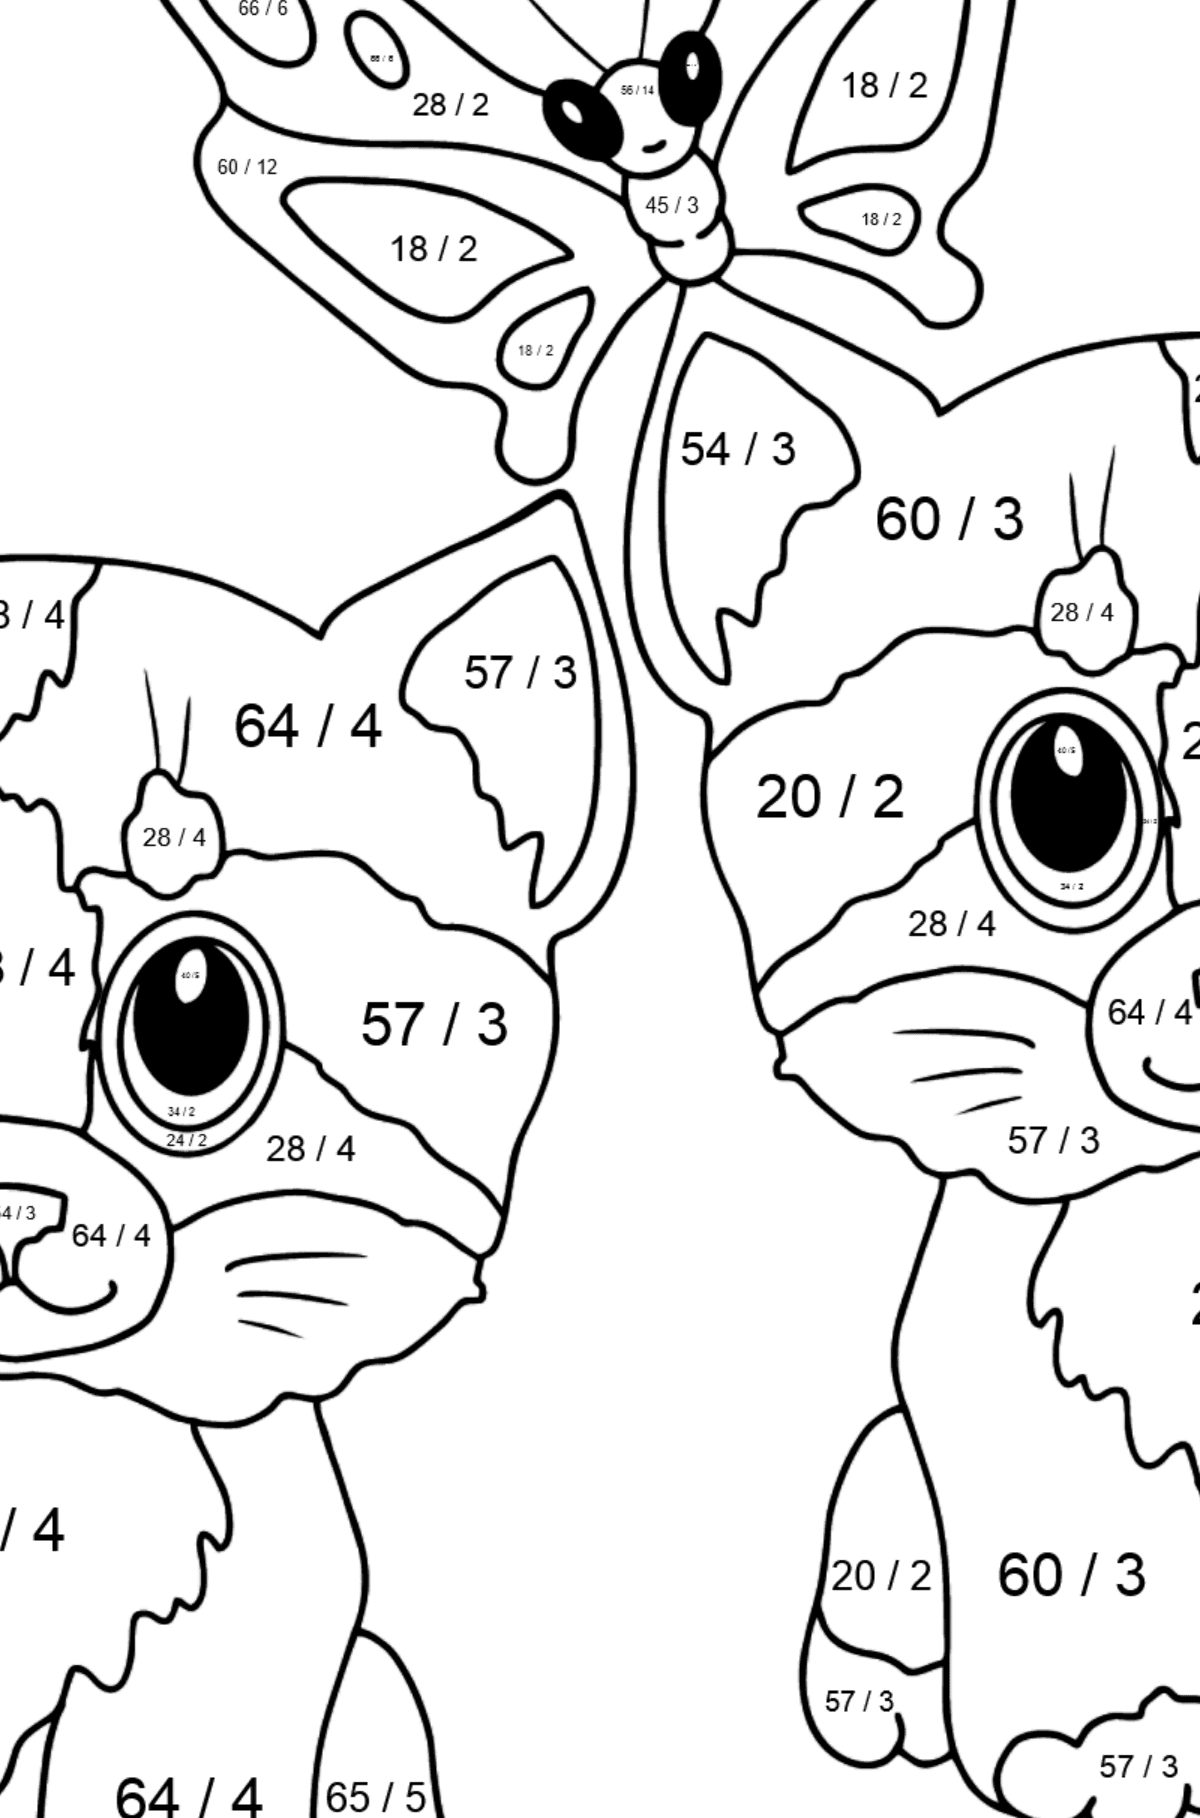 Disegno da colorare di simpatici gattini per i più piccoli - Colorazione matematica - Divisione per bambini